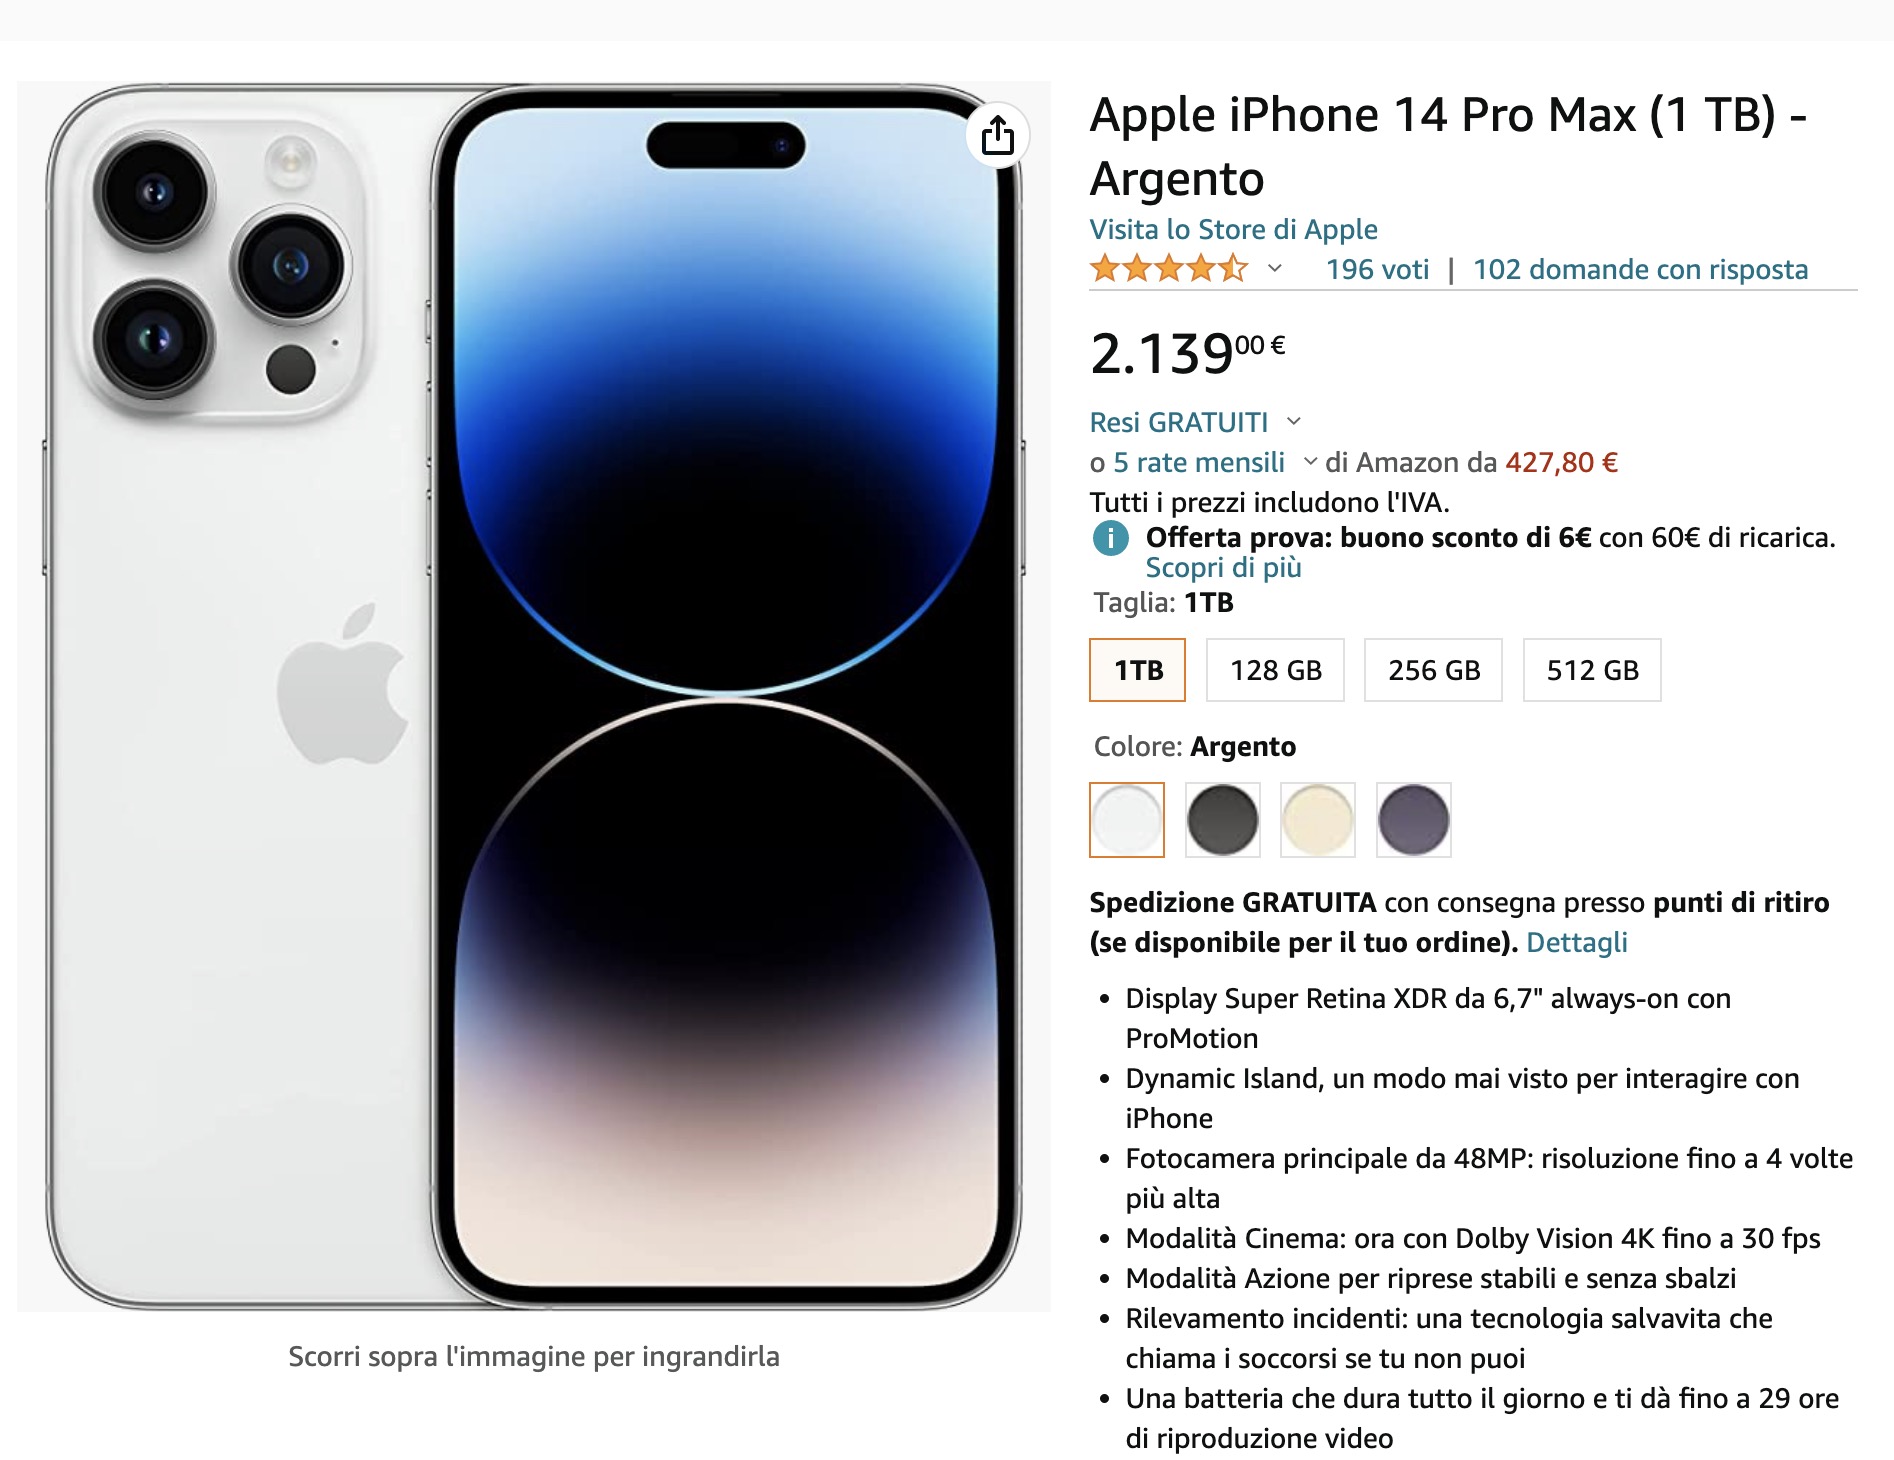 Il prezzo di iPhone 14 Pro max da 1 TB